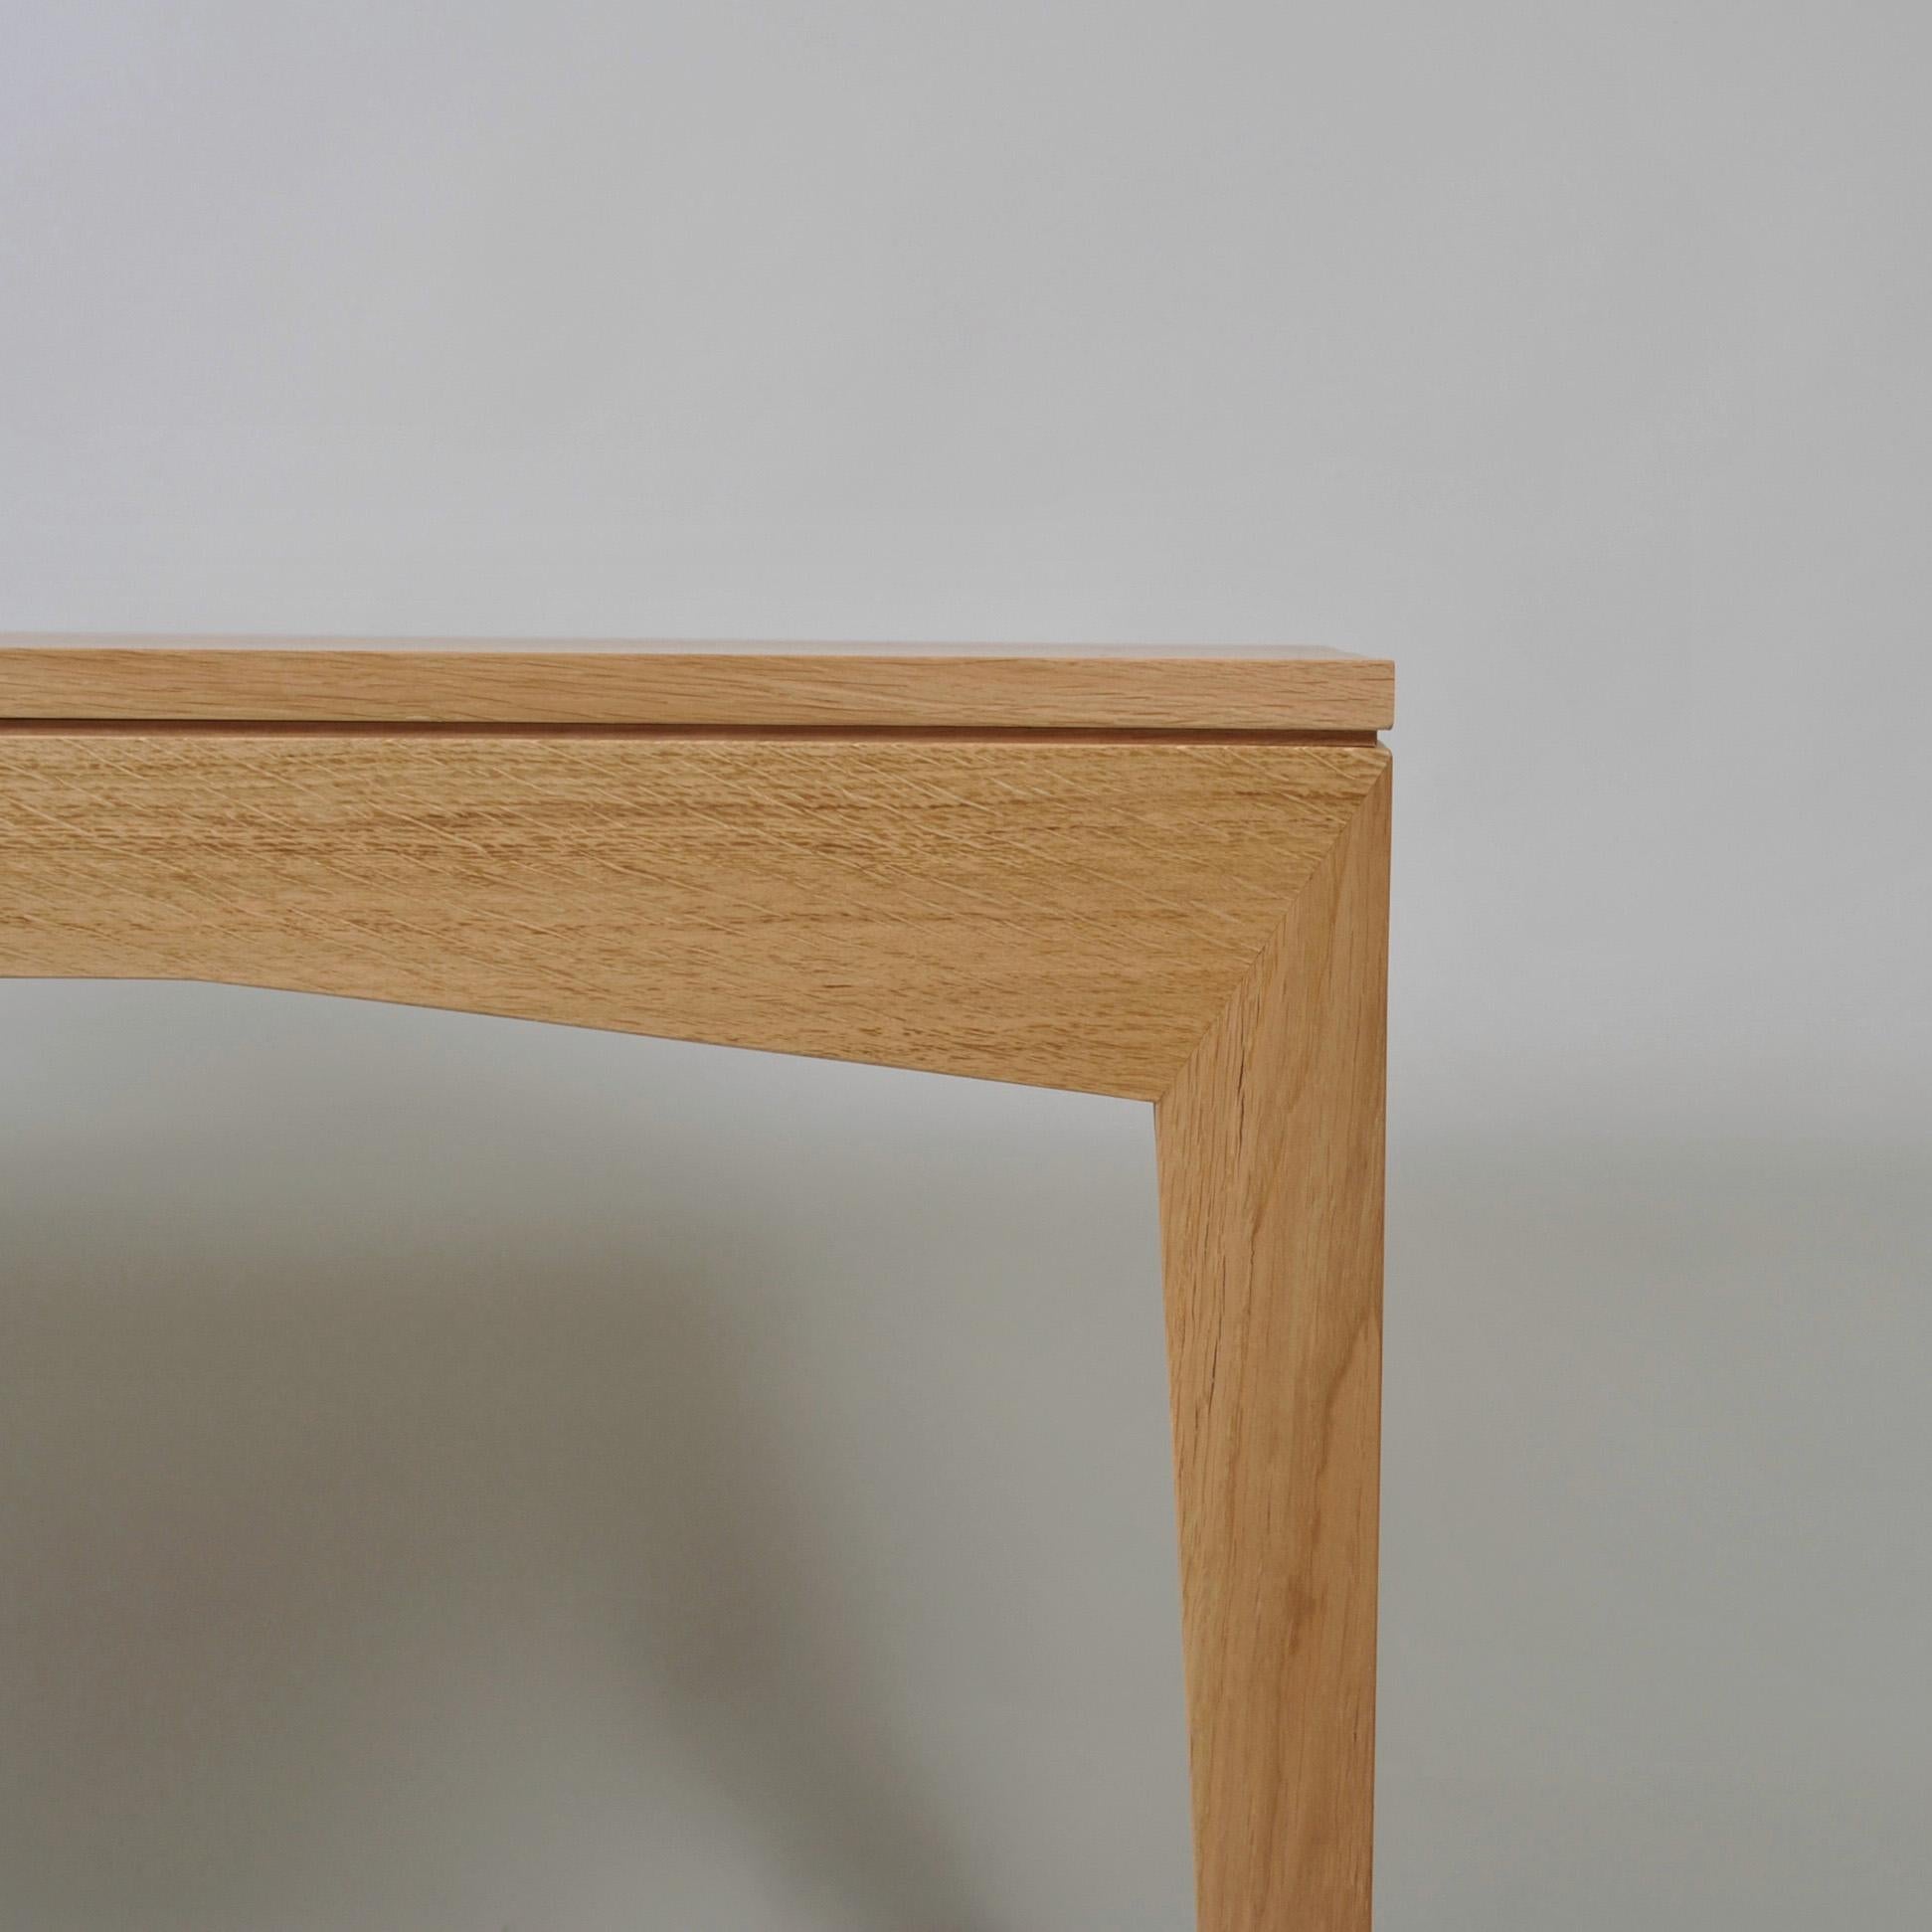 Un élégant bureau ou table d'écriture moderniste anglais fait à la main. Construit avec une surface traditionnelle de 3 planches solides sur des pieds et un cadre à angles aigus magnifiquement visibles. Fabriqué à la main par des artisans de